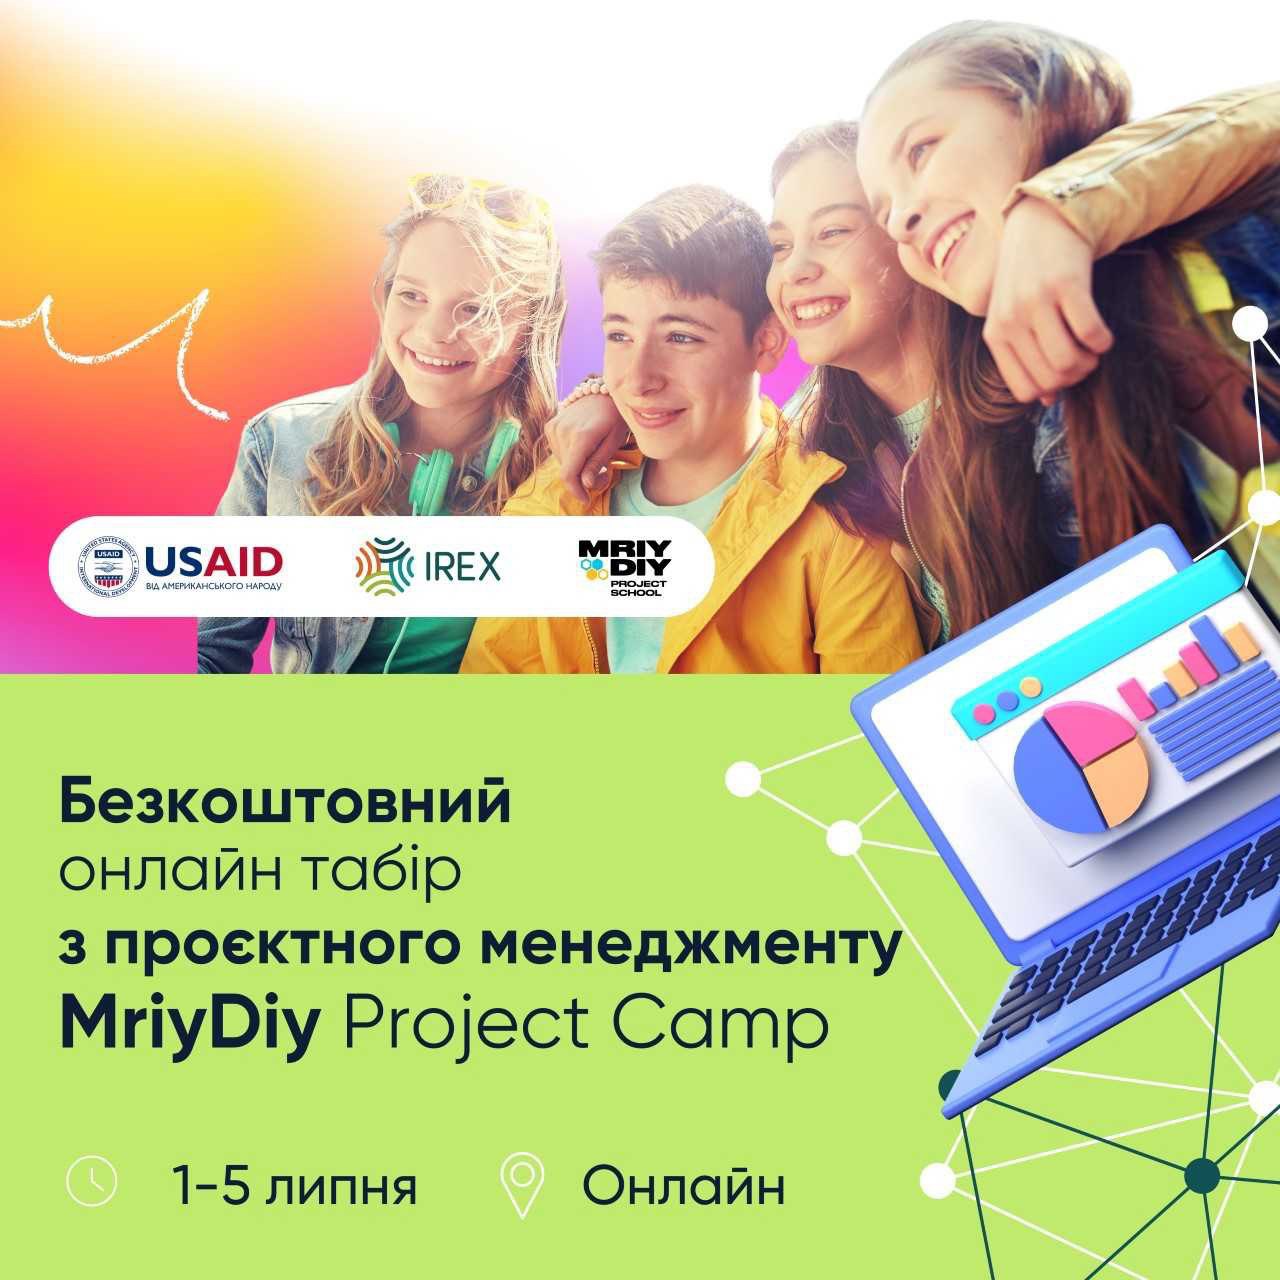 Дітей та молодь запрошують долучитися до безкоштовного онлайн-табору з проєктного менеджменту MriyDiy Project Camp